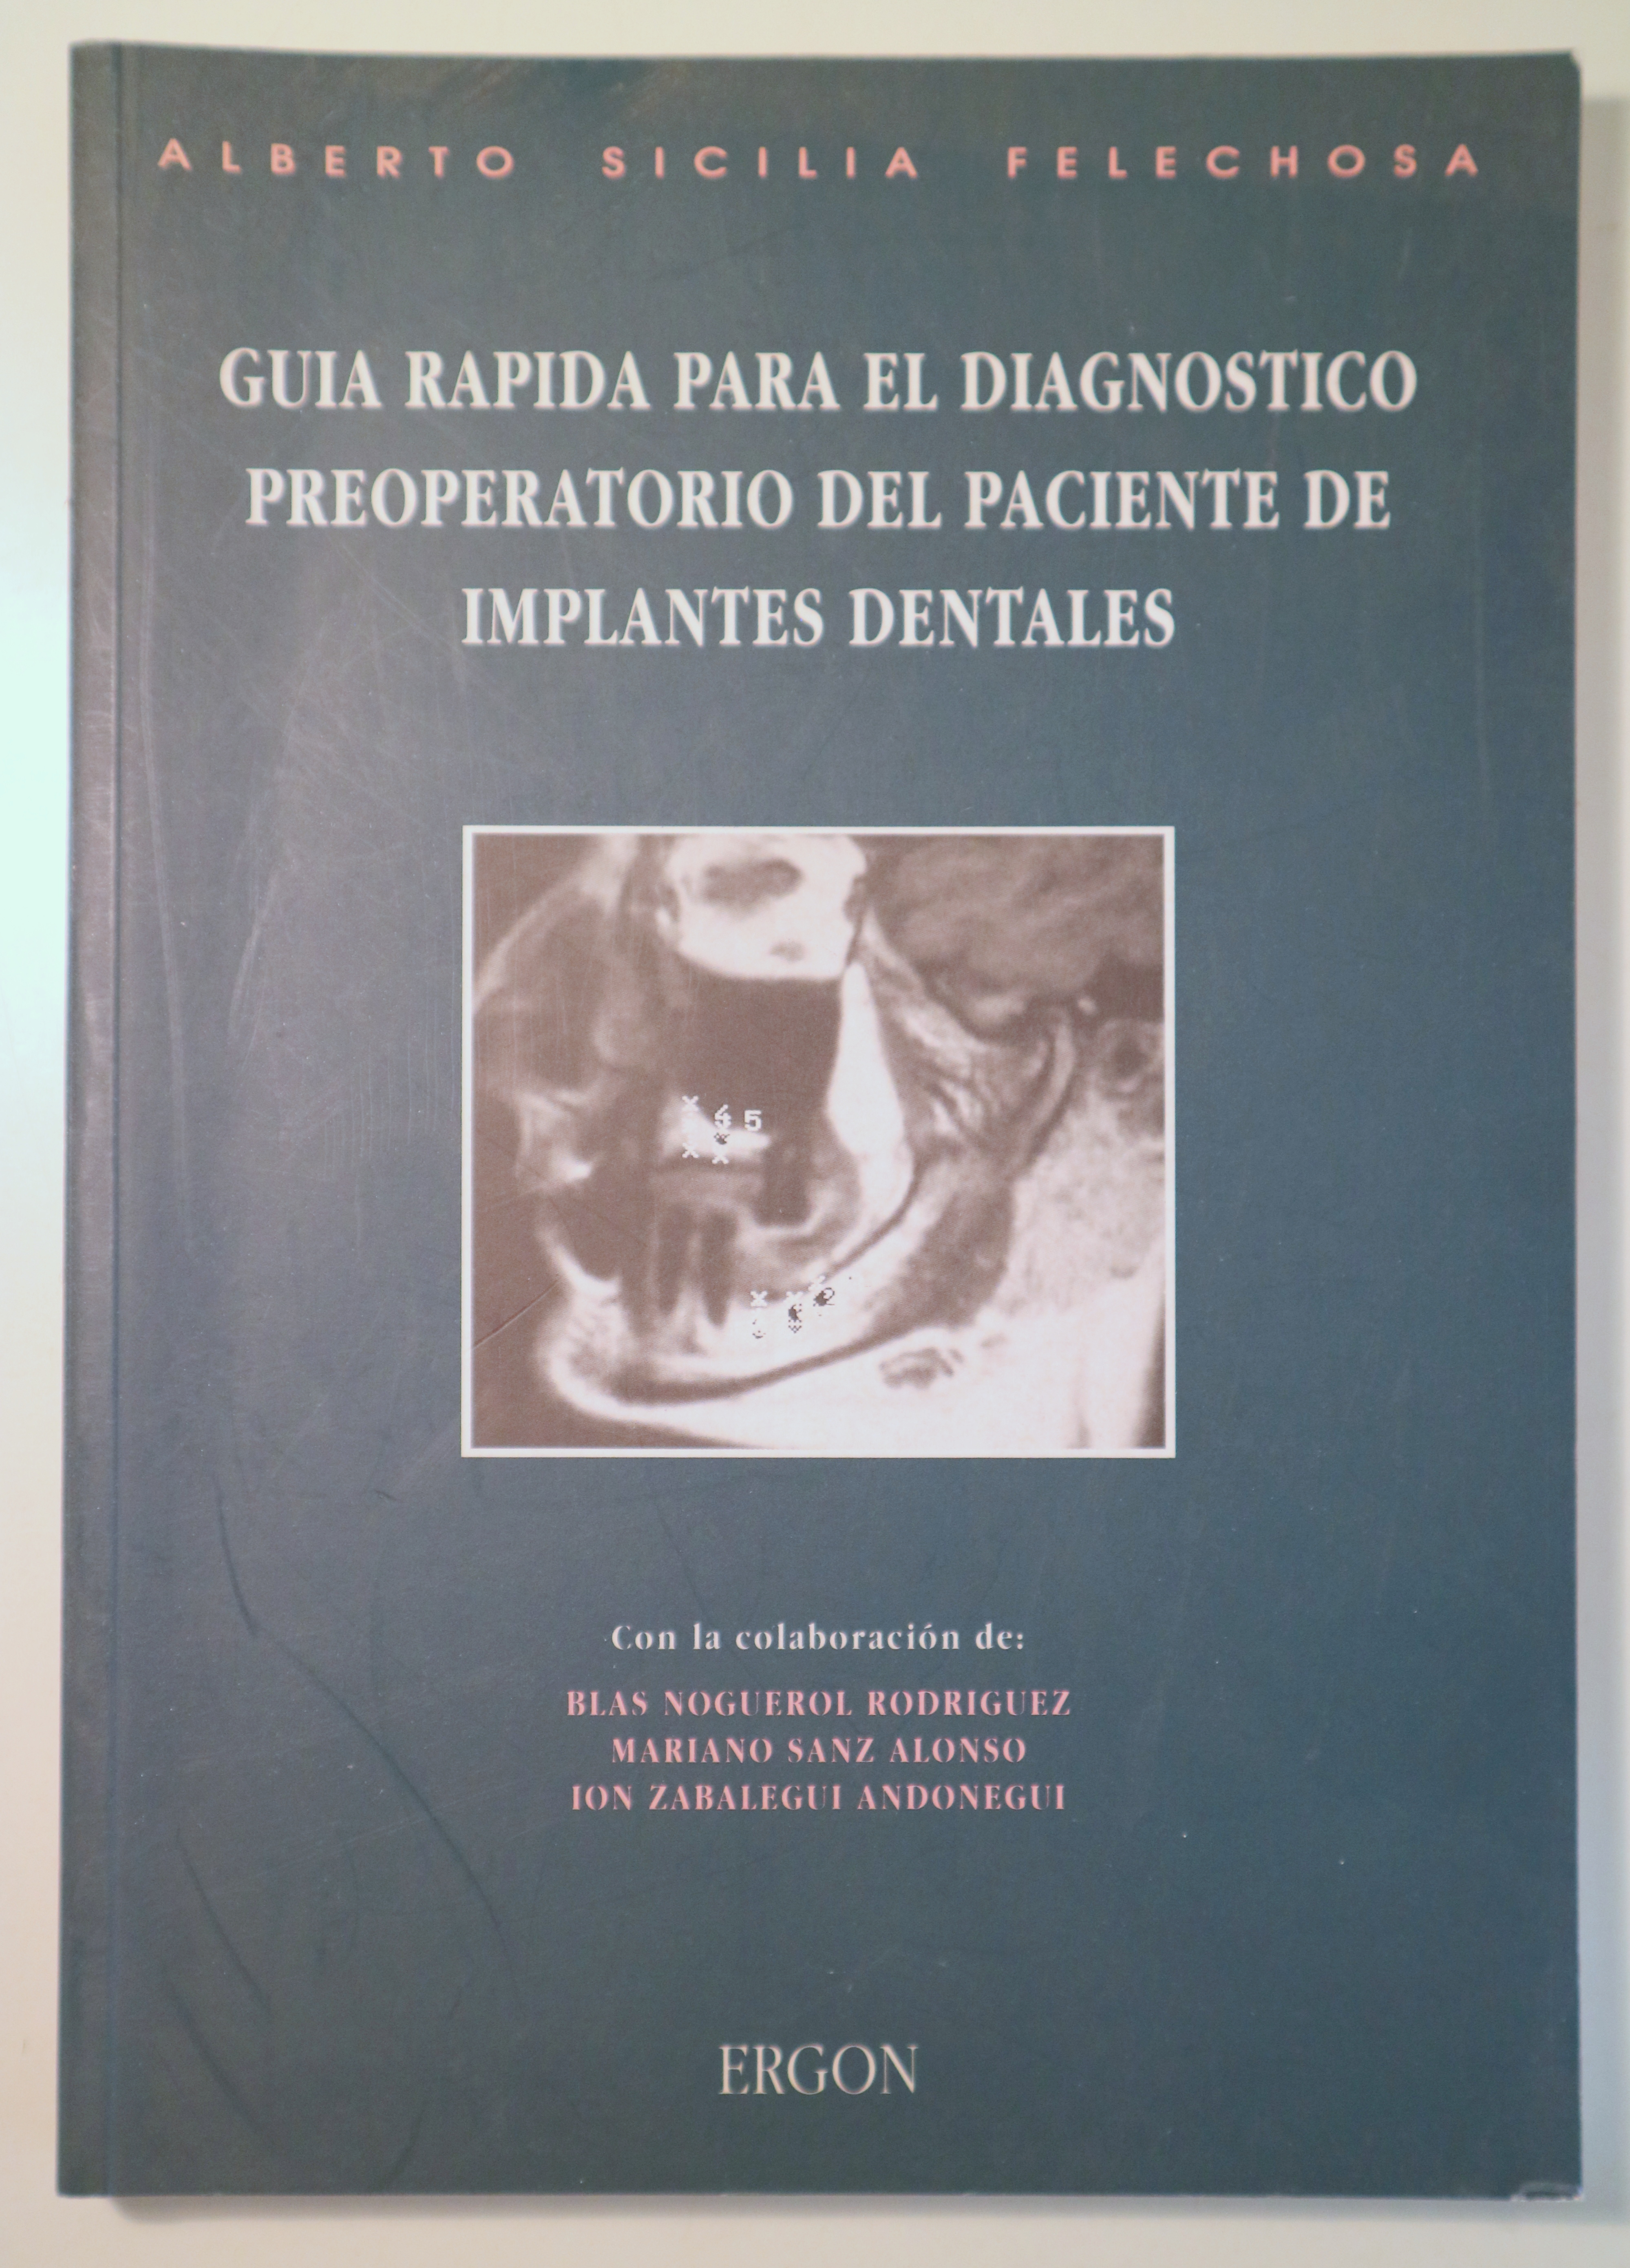 GUÍA RÁPIDA PARA EL DIAGNÓSTICO PREOPERATORIO DEL PACIENTE DE IMPLANTES DENTALES - Madrid 1993 - Muy ilustrado